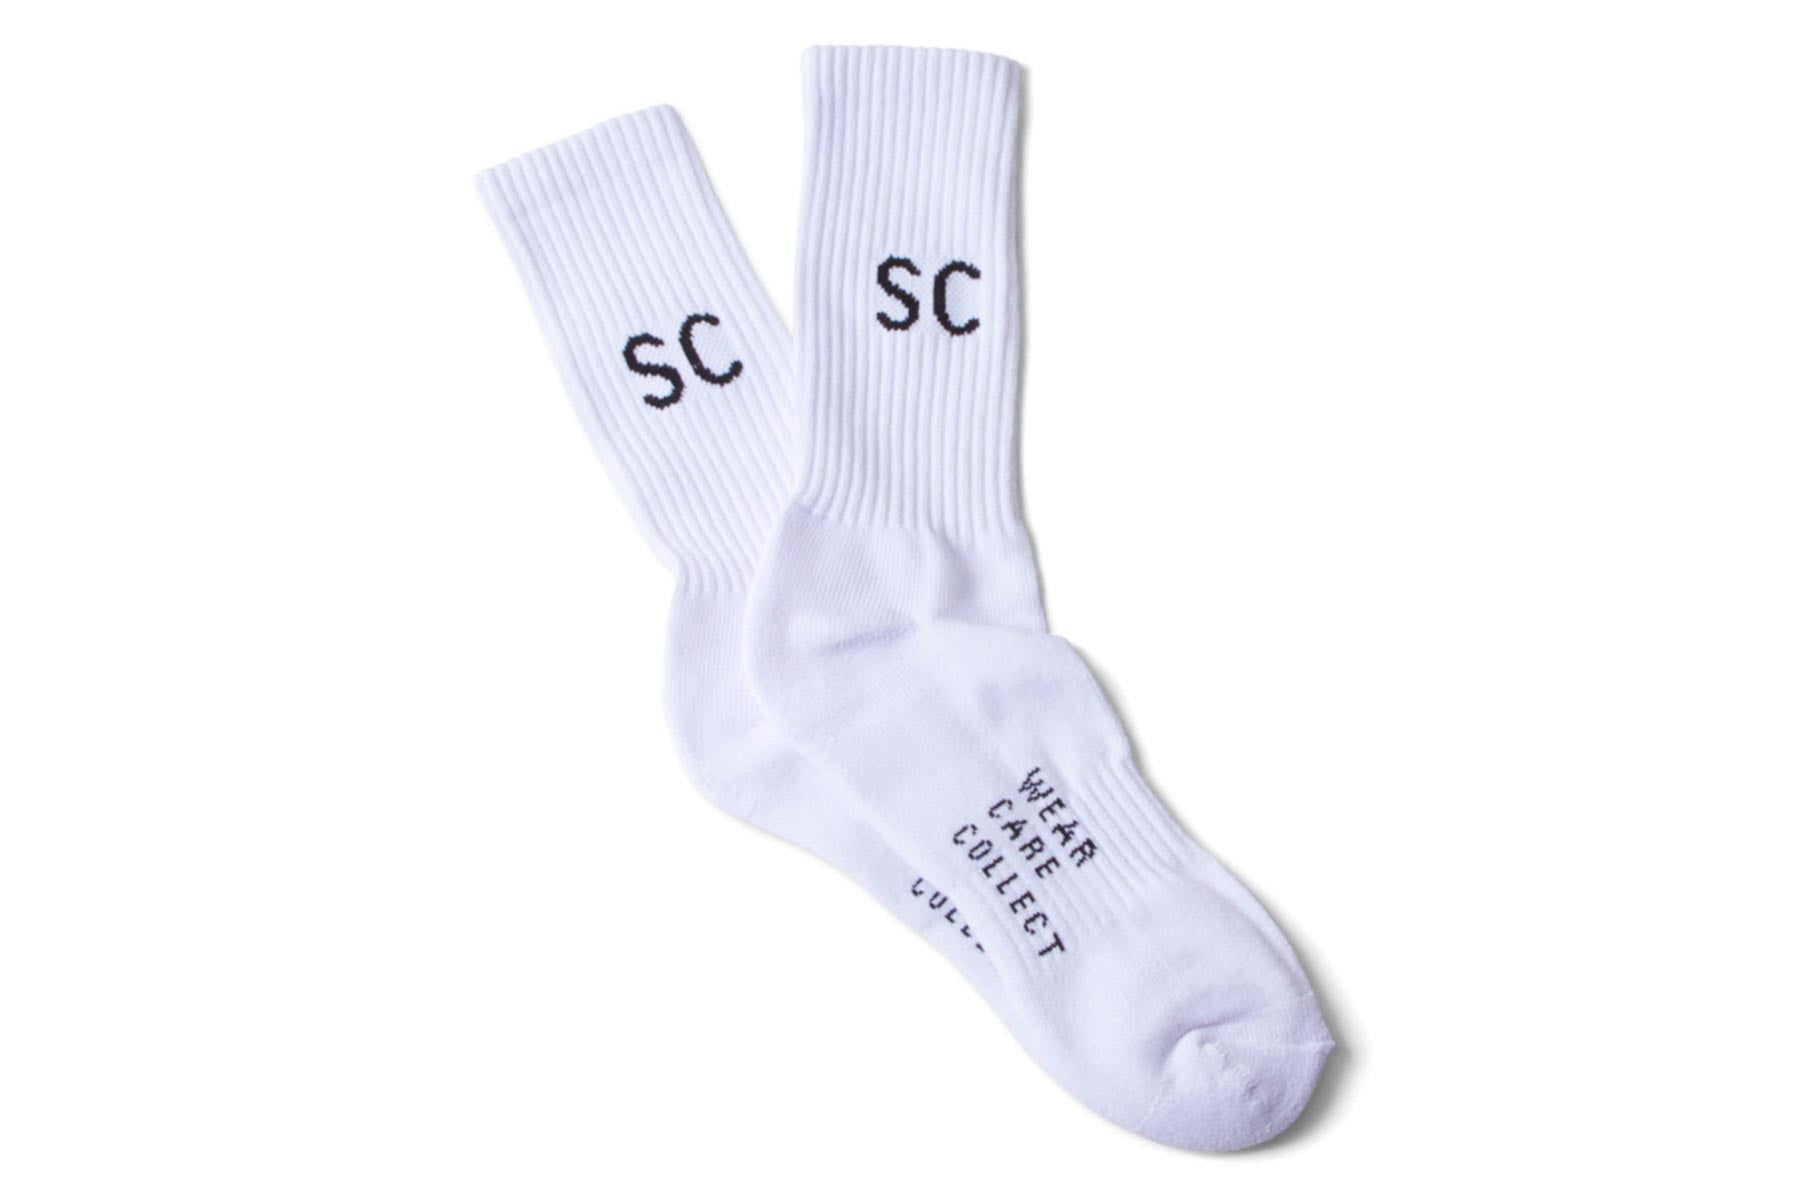 SC Fam Crew Socks (3 Pack) - White / Black